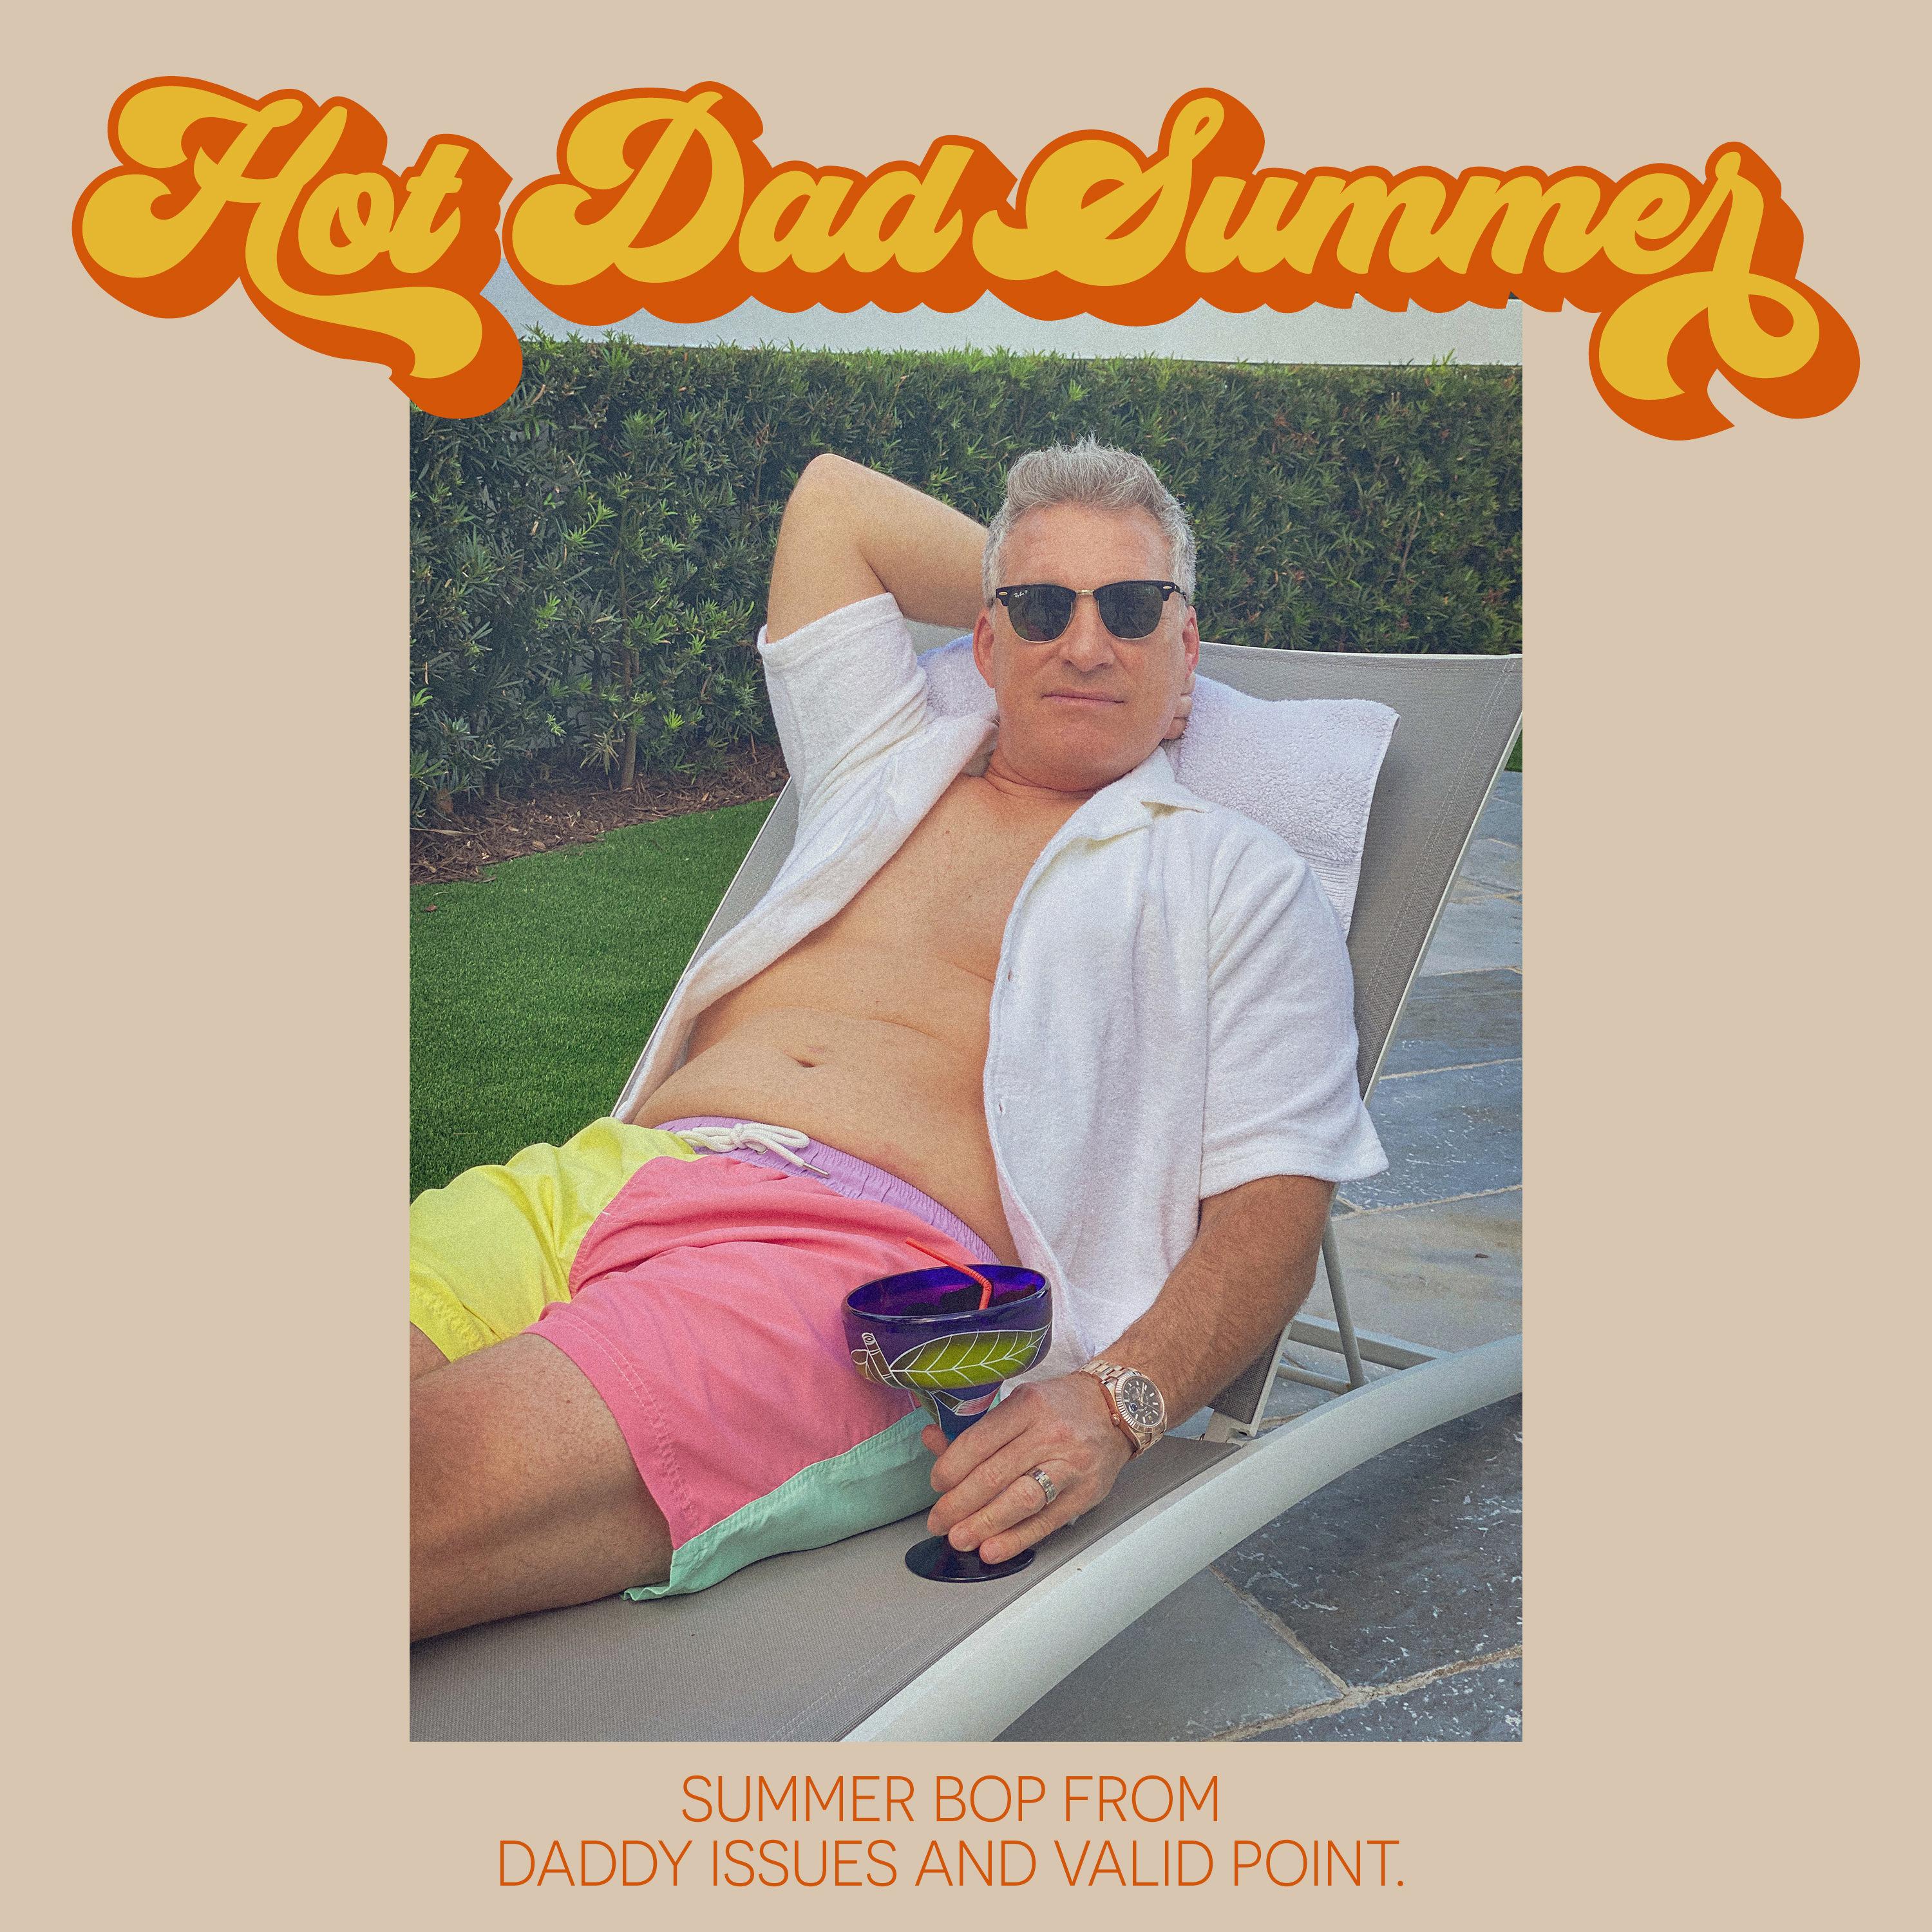 Valid Point. - Hot Dad Summer